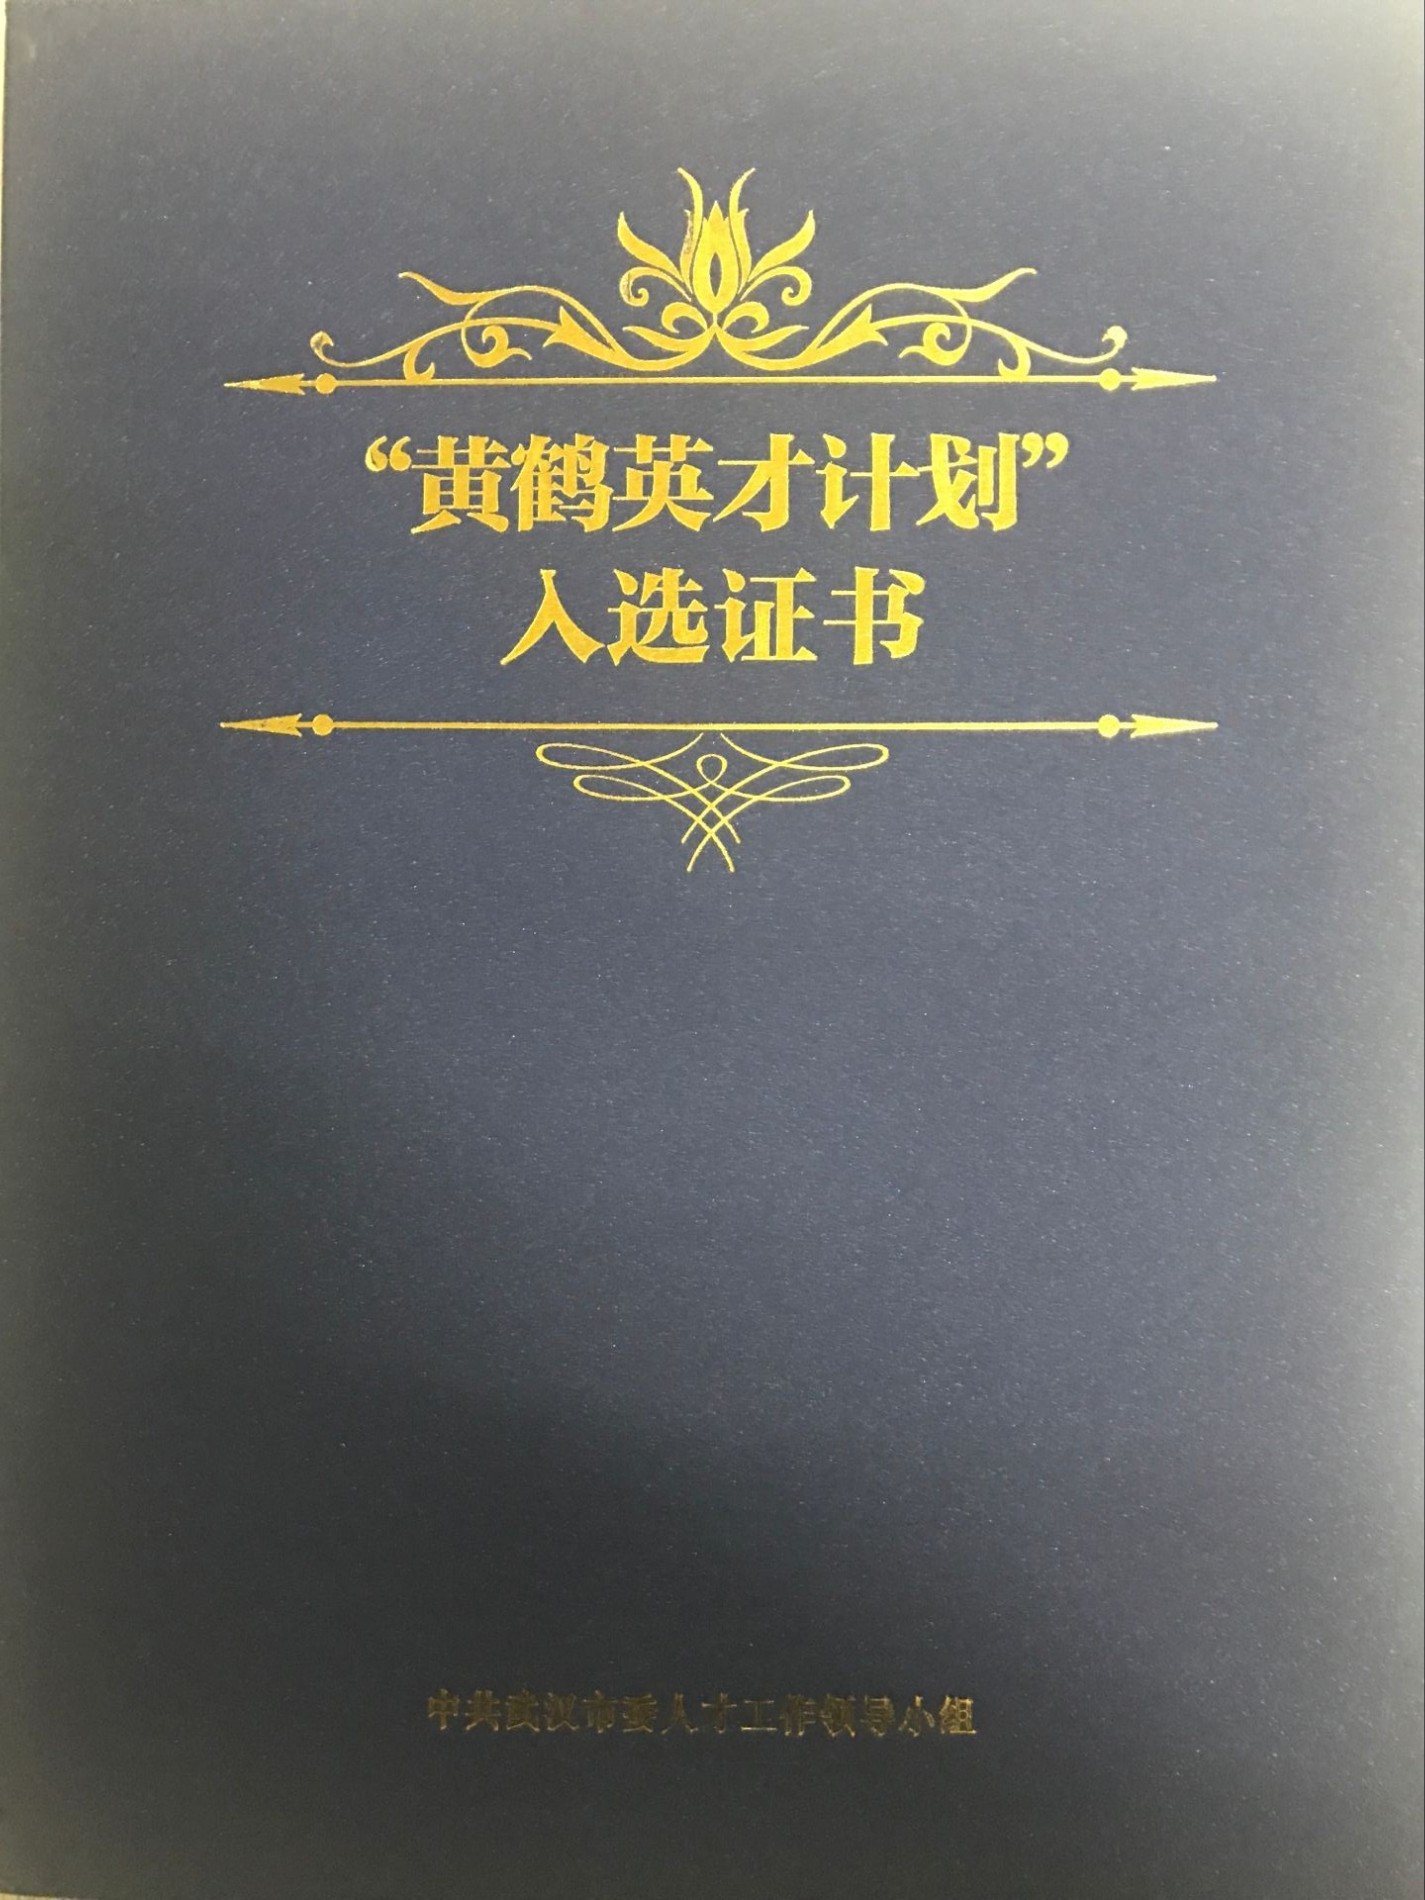 HuangHe YingCai Scheme Certificate